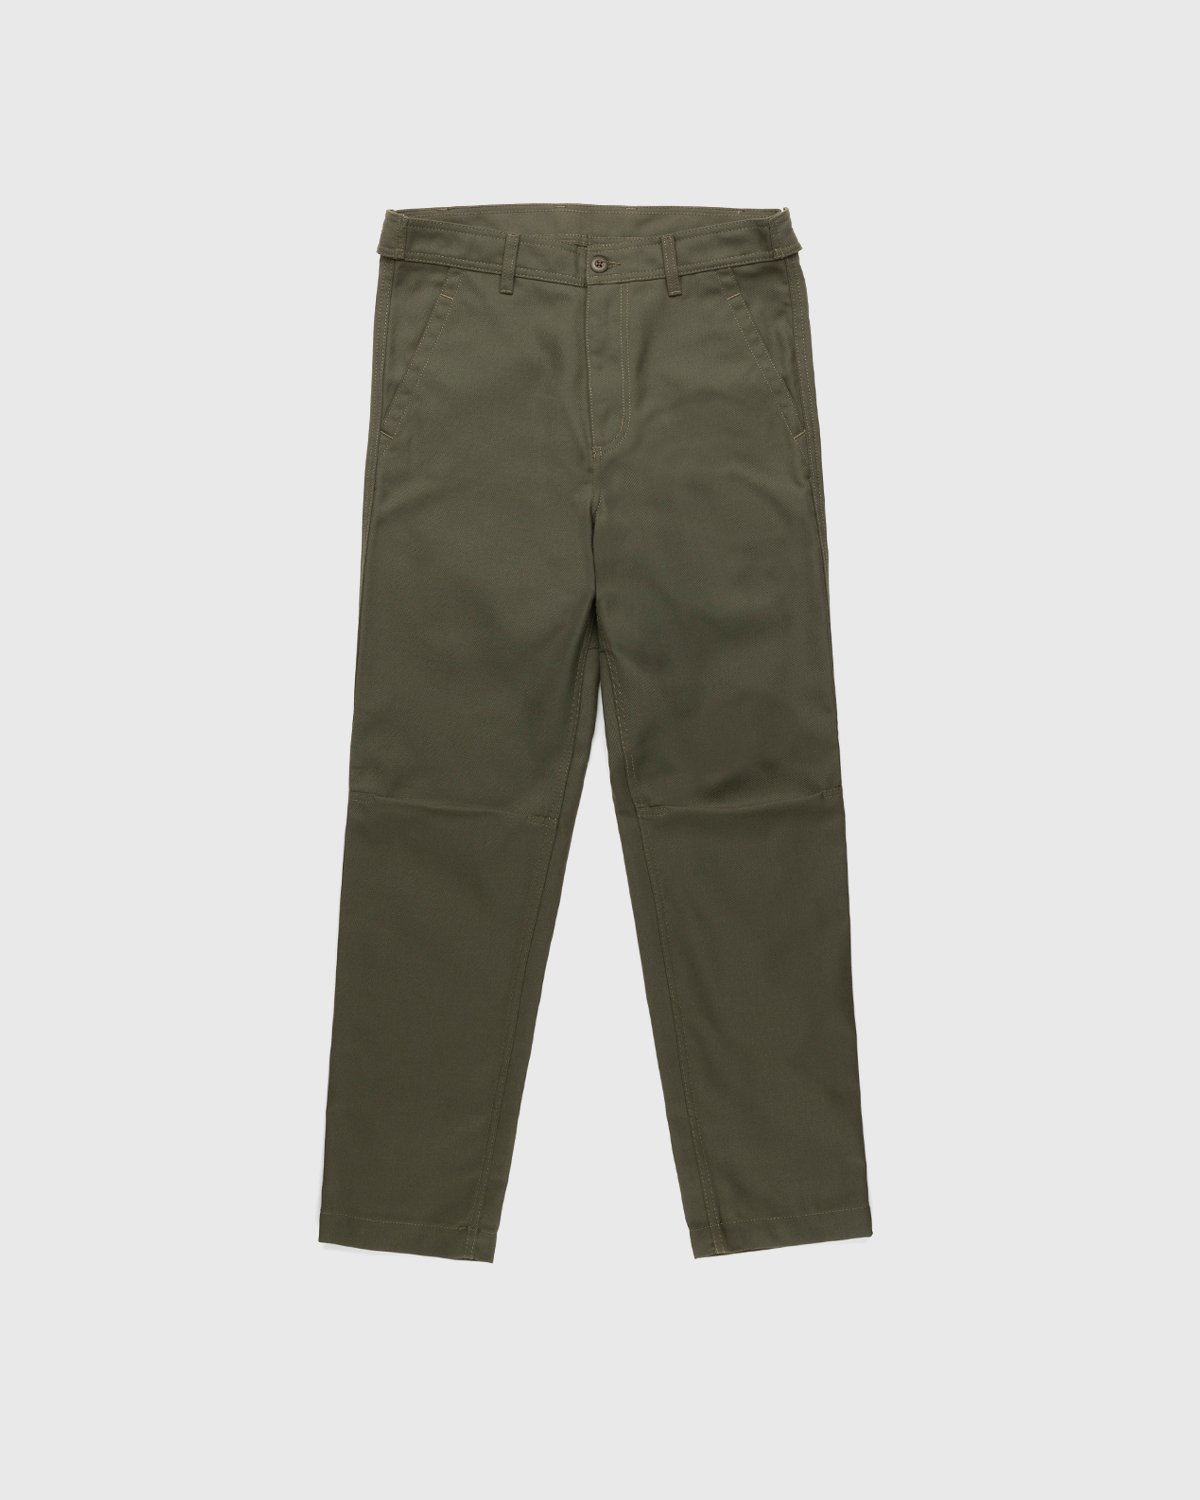 Carhartt WIP - Barton Pant Cypress - Clothing - Green - Image 1